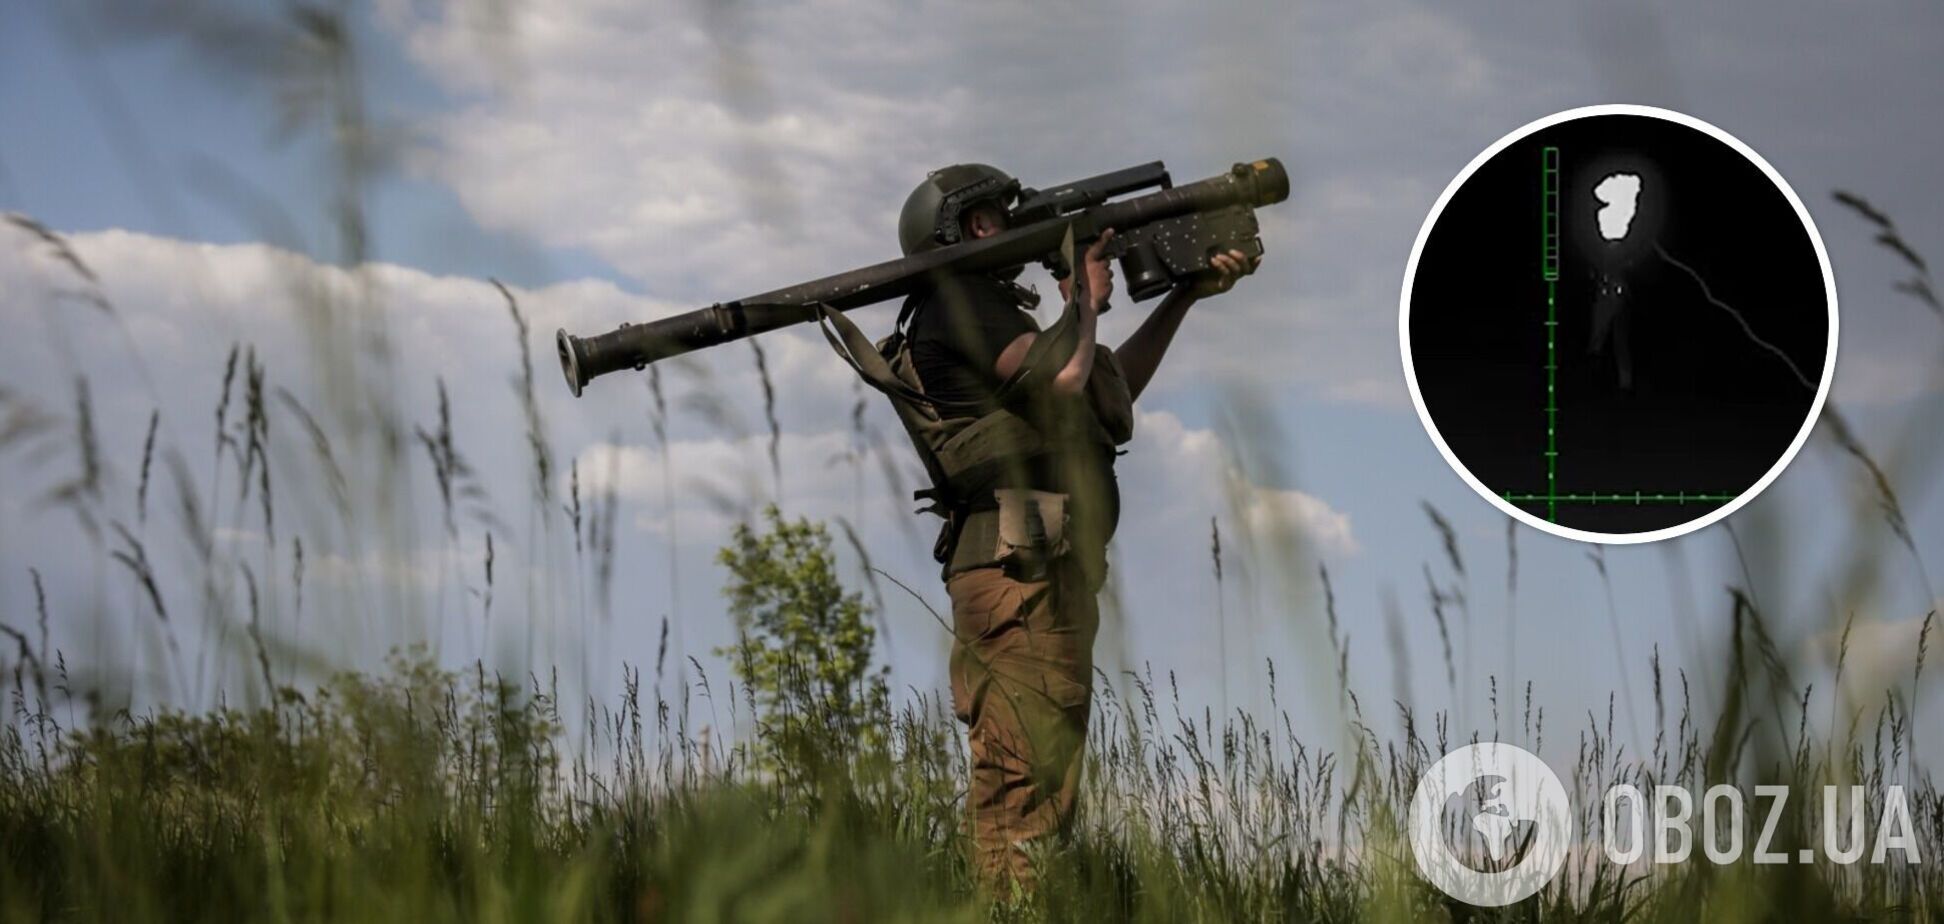 Отработали из ПЗРК Stinger: в ВСУ показали сбивание российского 'Шахеда'. Видео